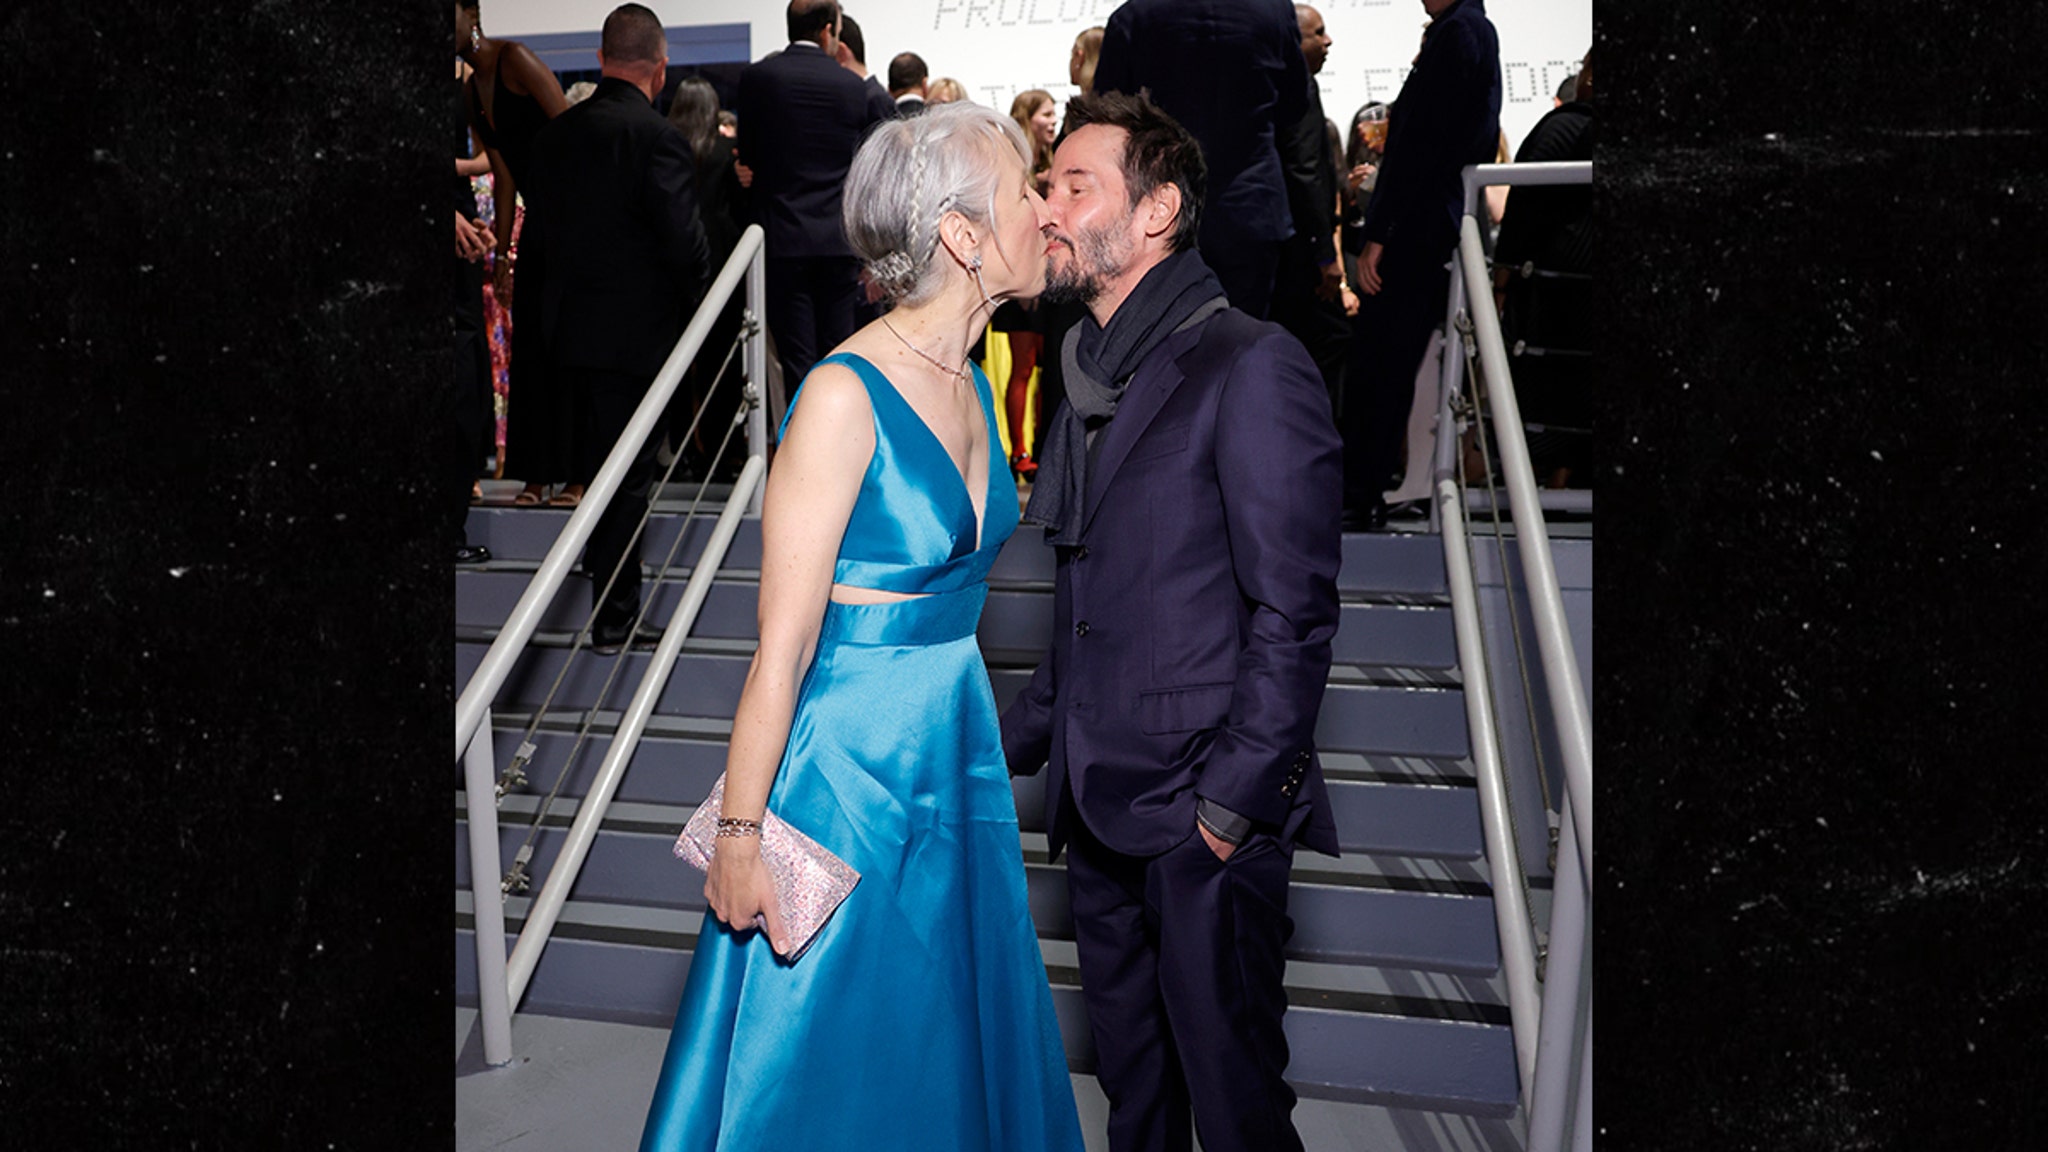 Keanu Reeves kust zijn vriendin Alexandra Grant opnieuw met open ogen